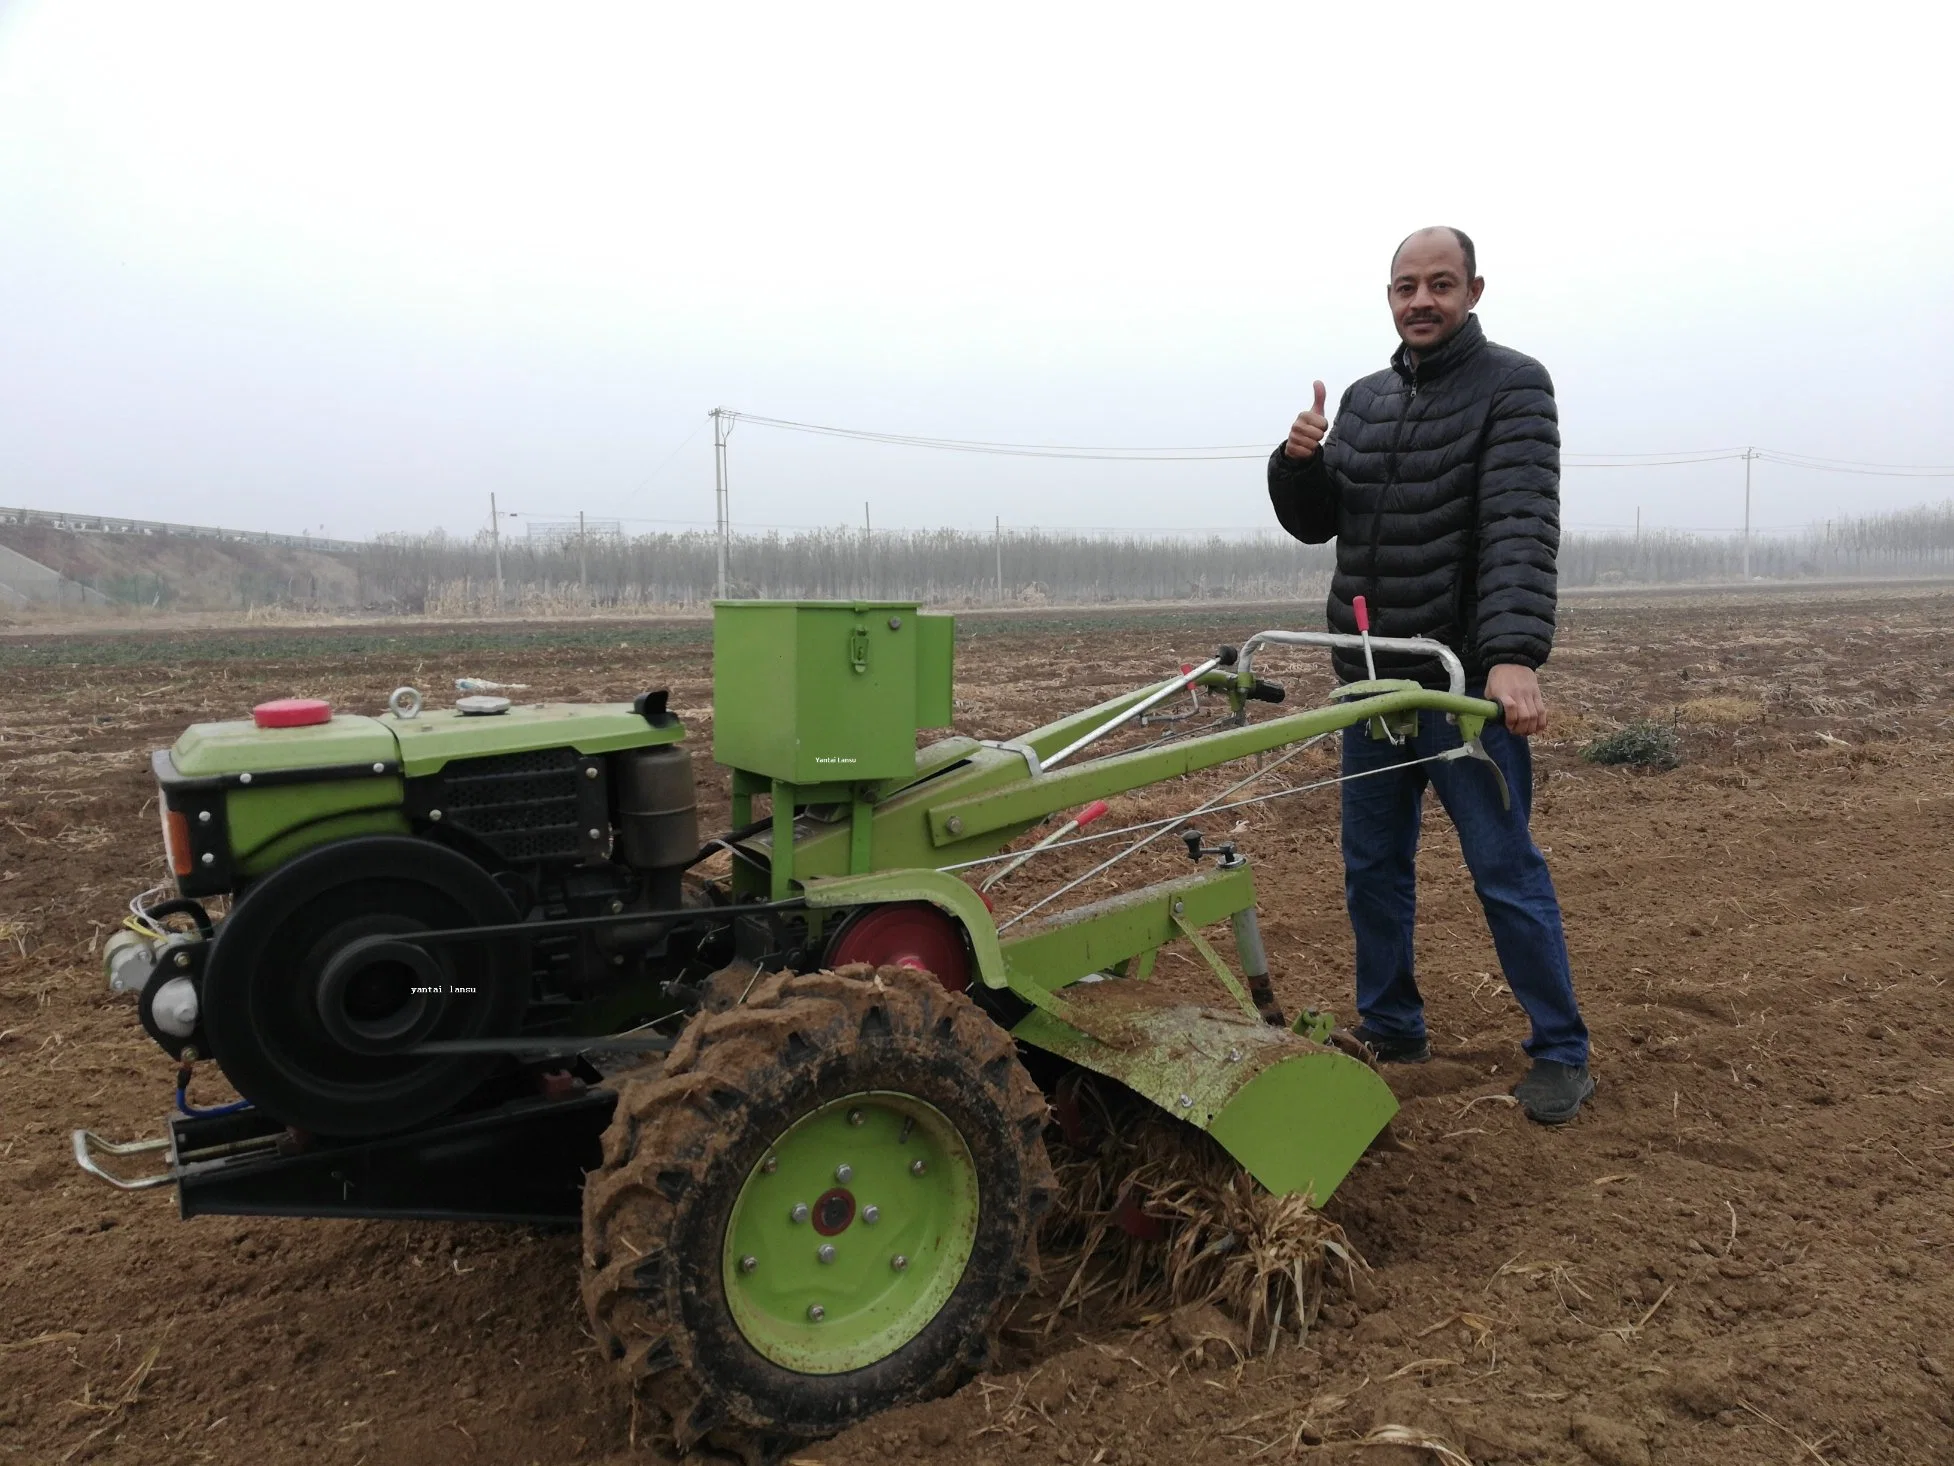 motocultor Accesorios y Herramientas / Pto de Maquinaria Agrícola Tractor pequeño lanza Cuitivator arado a motor Accesorios